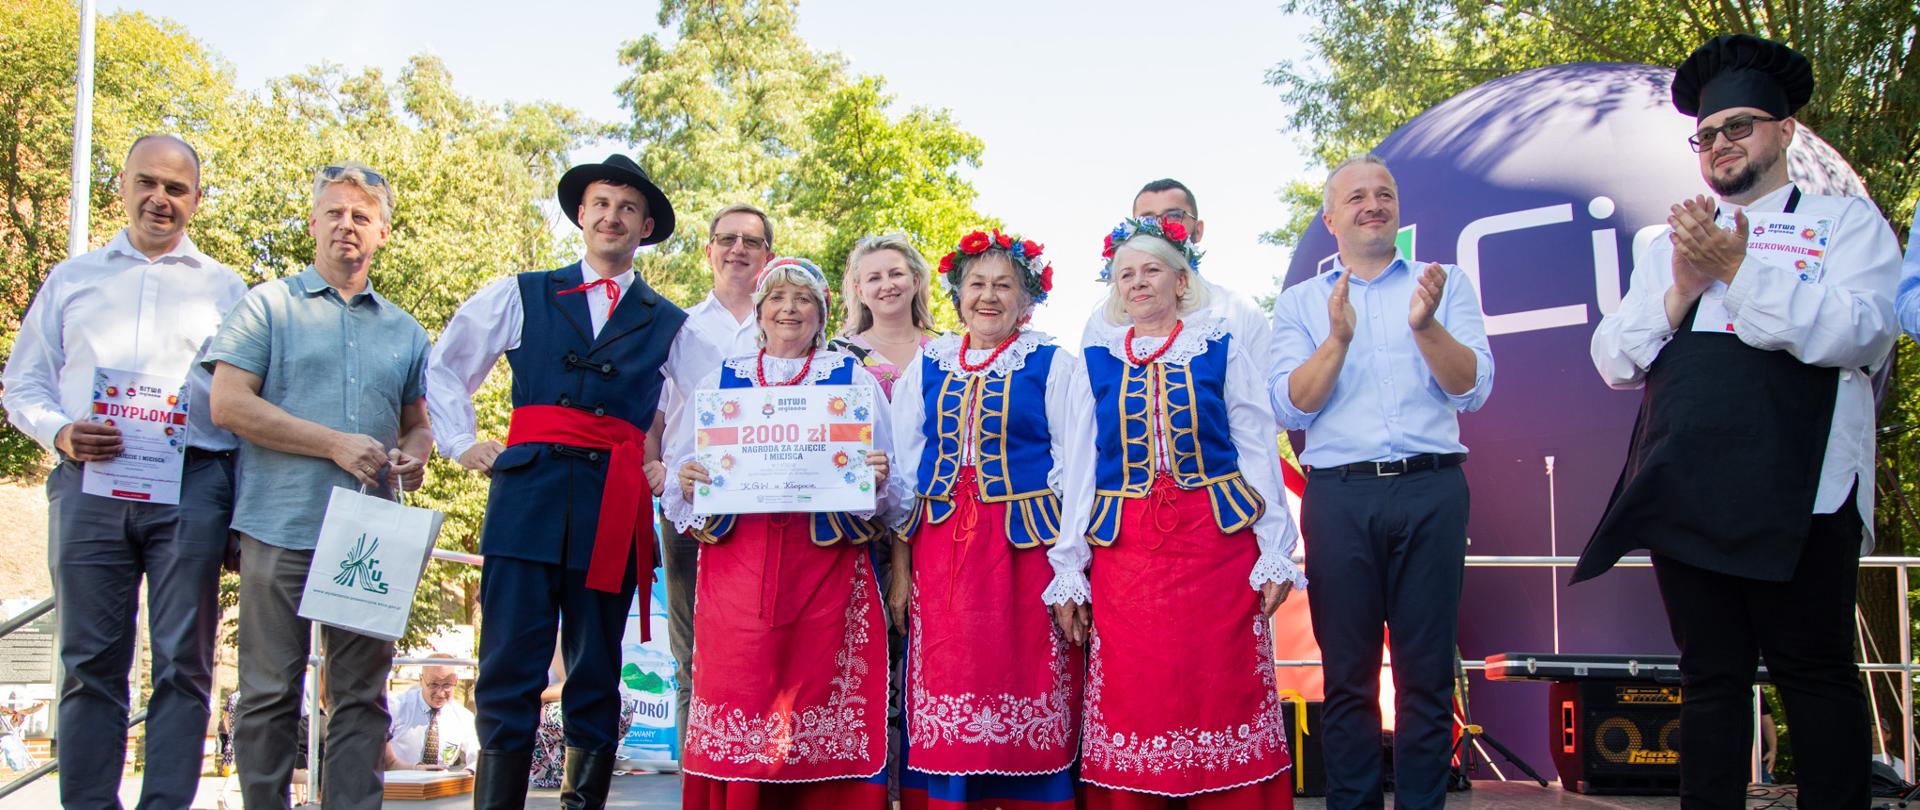 
Grupa ludzi stojąca na scenie w tradycyjnych polskich strojach ludowych